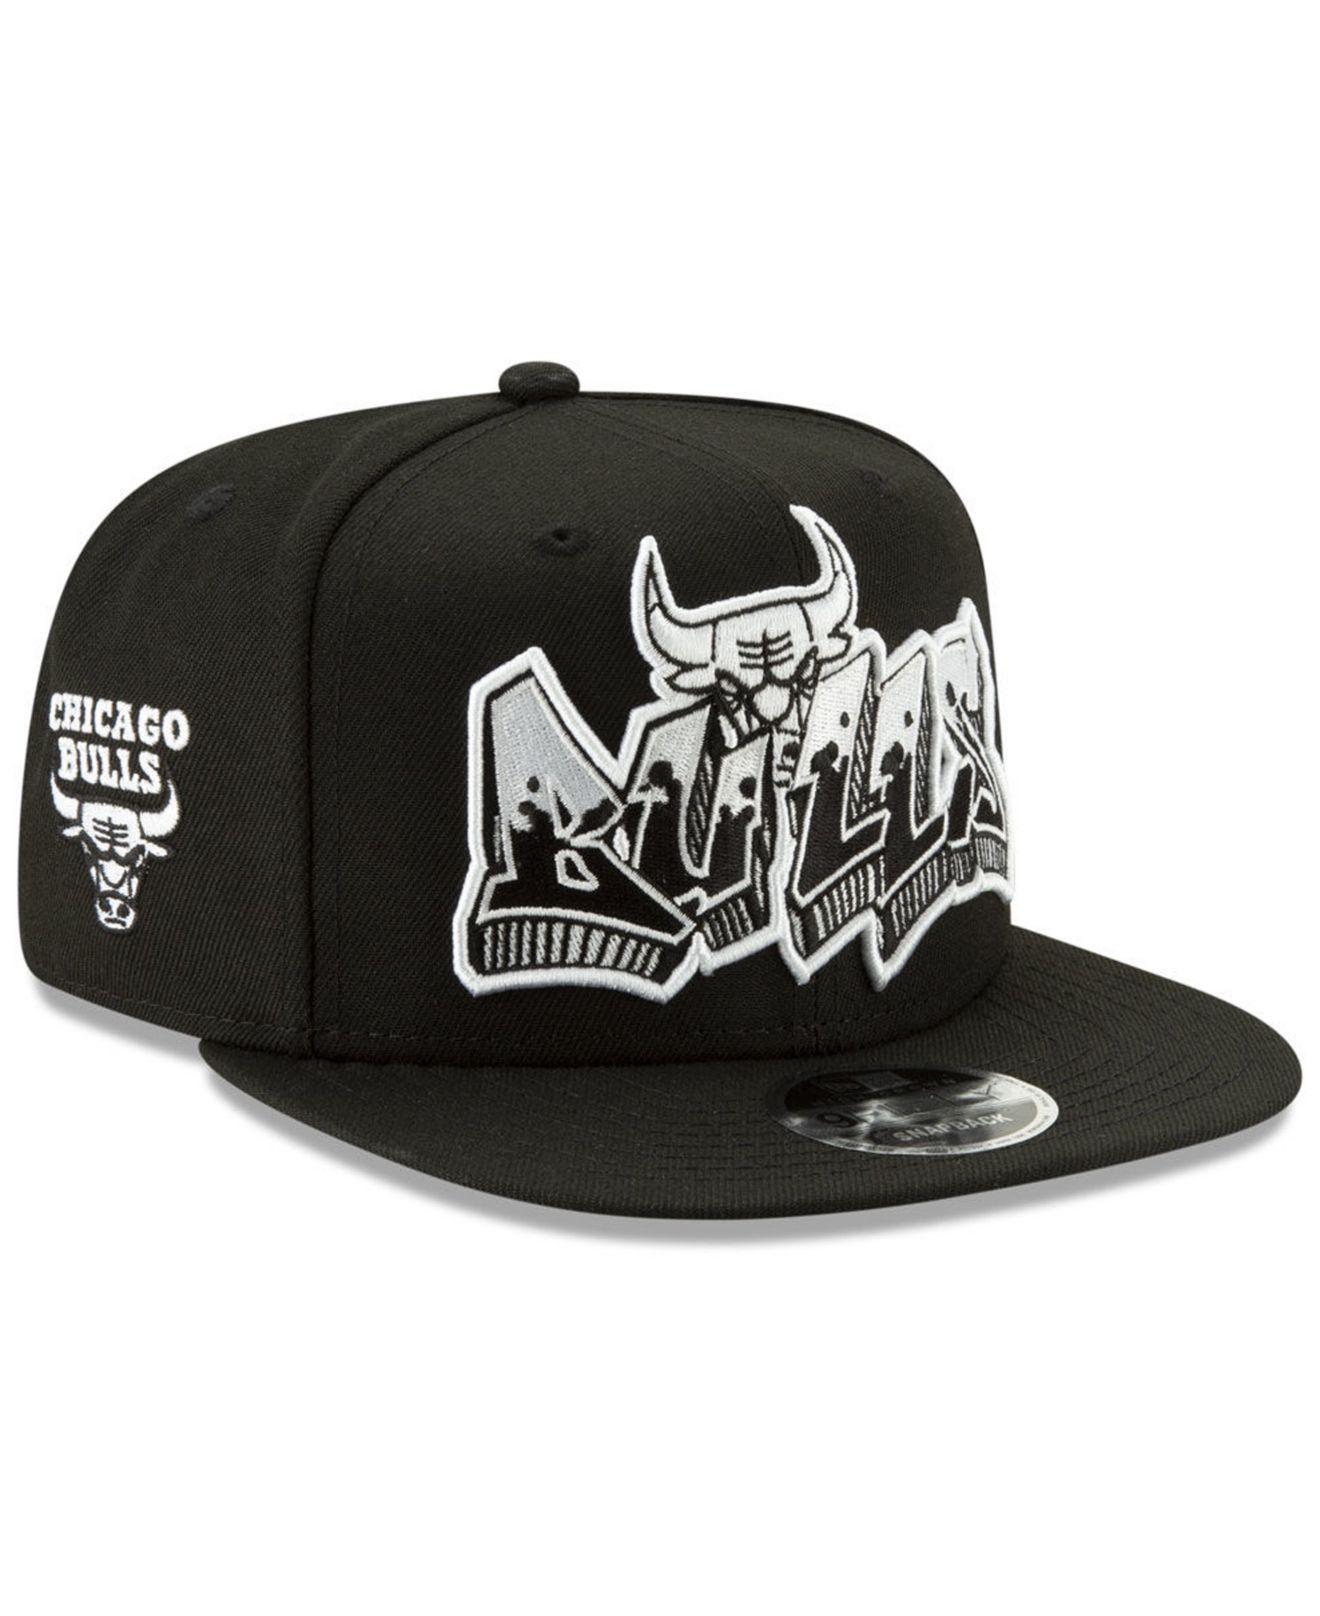 Retro Chicago Bulls Snapback Hat Cap Black – Clout Closet